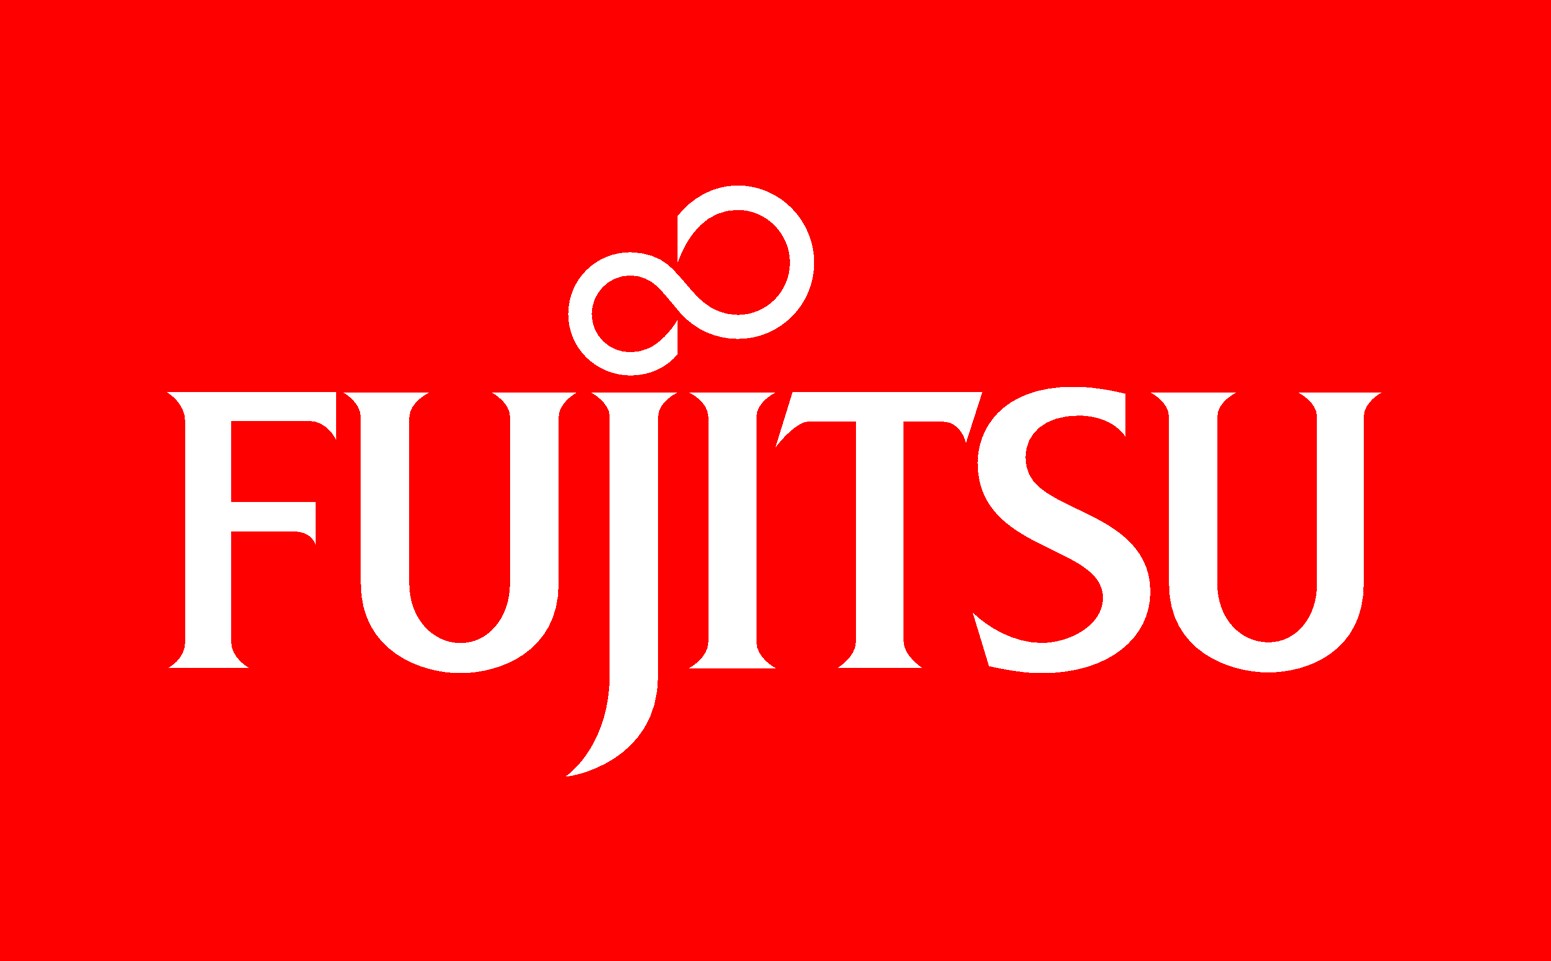 Fujitsu تفتتح قريتها للتصوير بمعرض سيبت بألمانيا